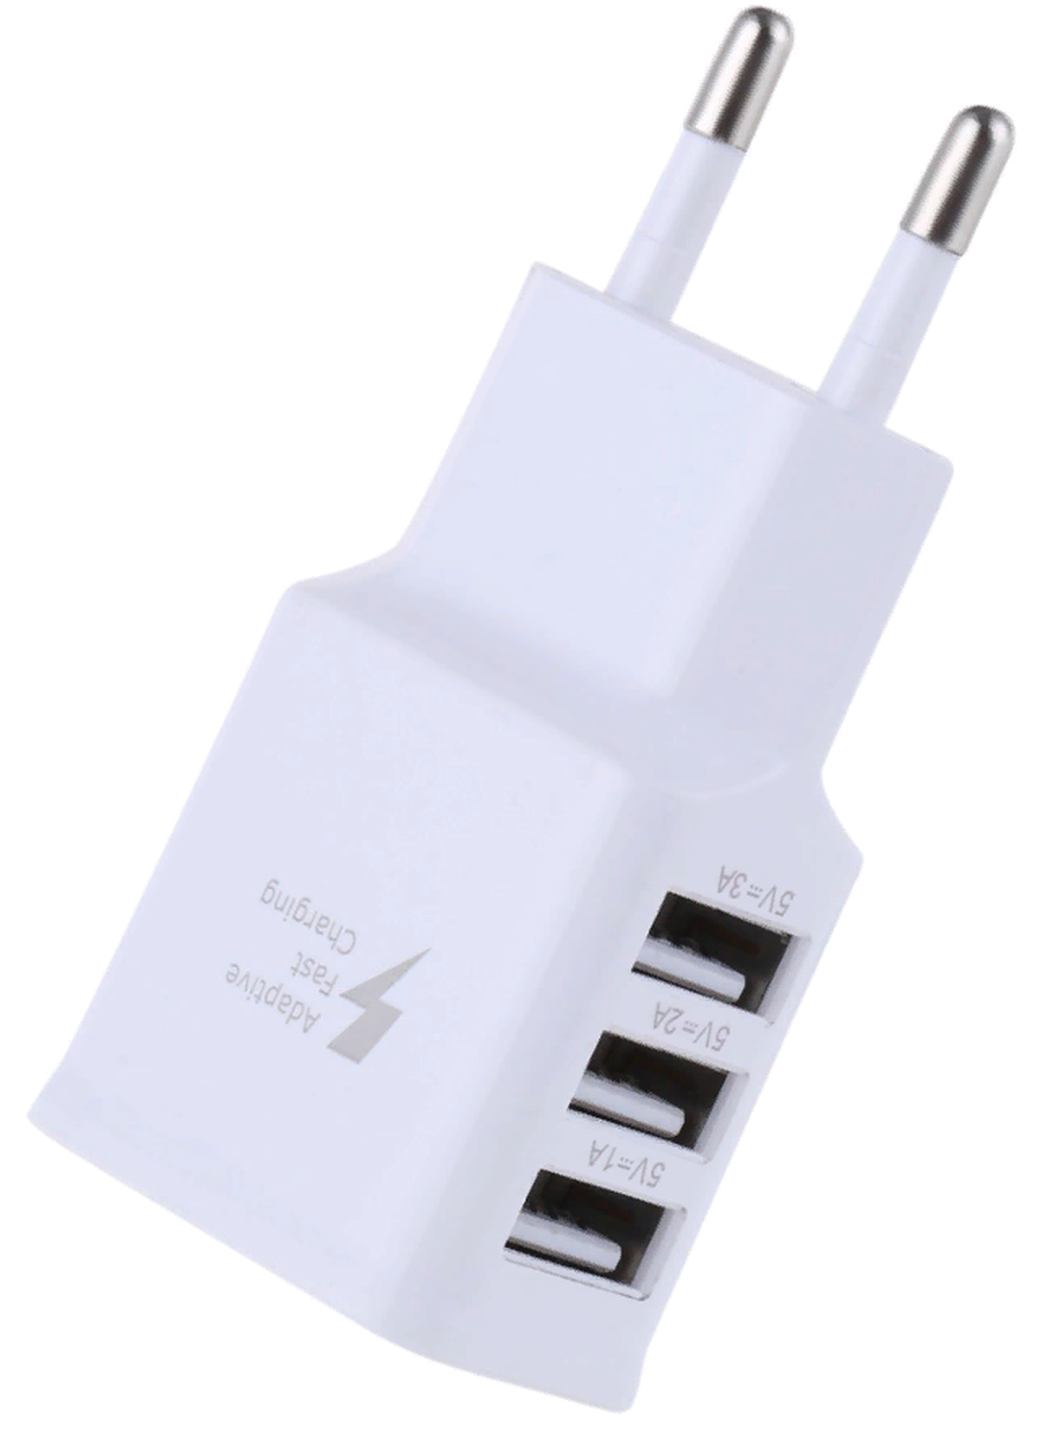 Многофункциональный адаптер зарядного устройства, 3 порта USB, с разъемом EU, белый фото